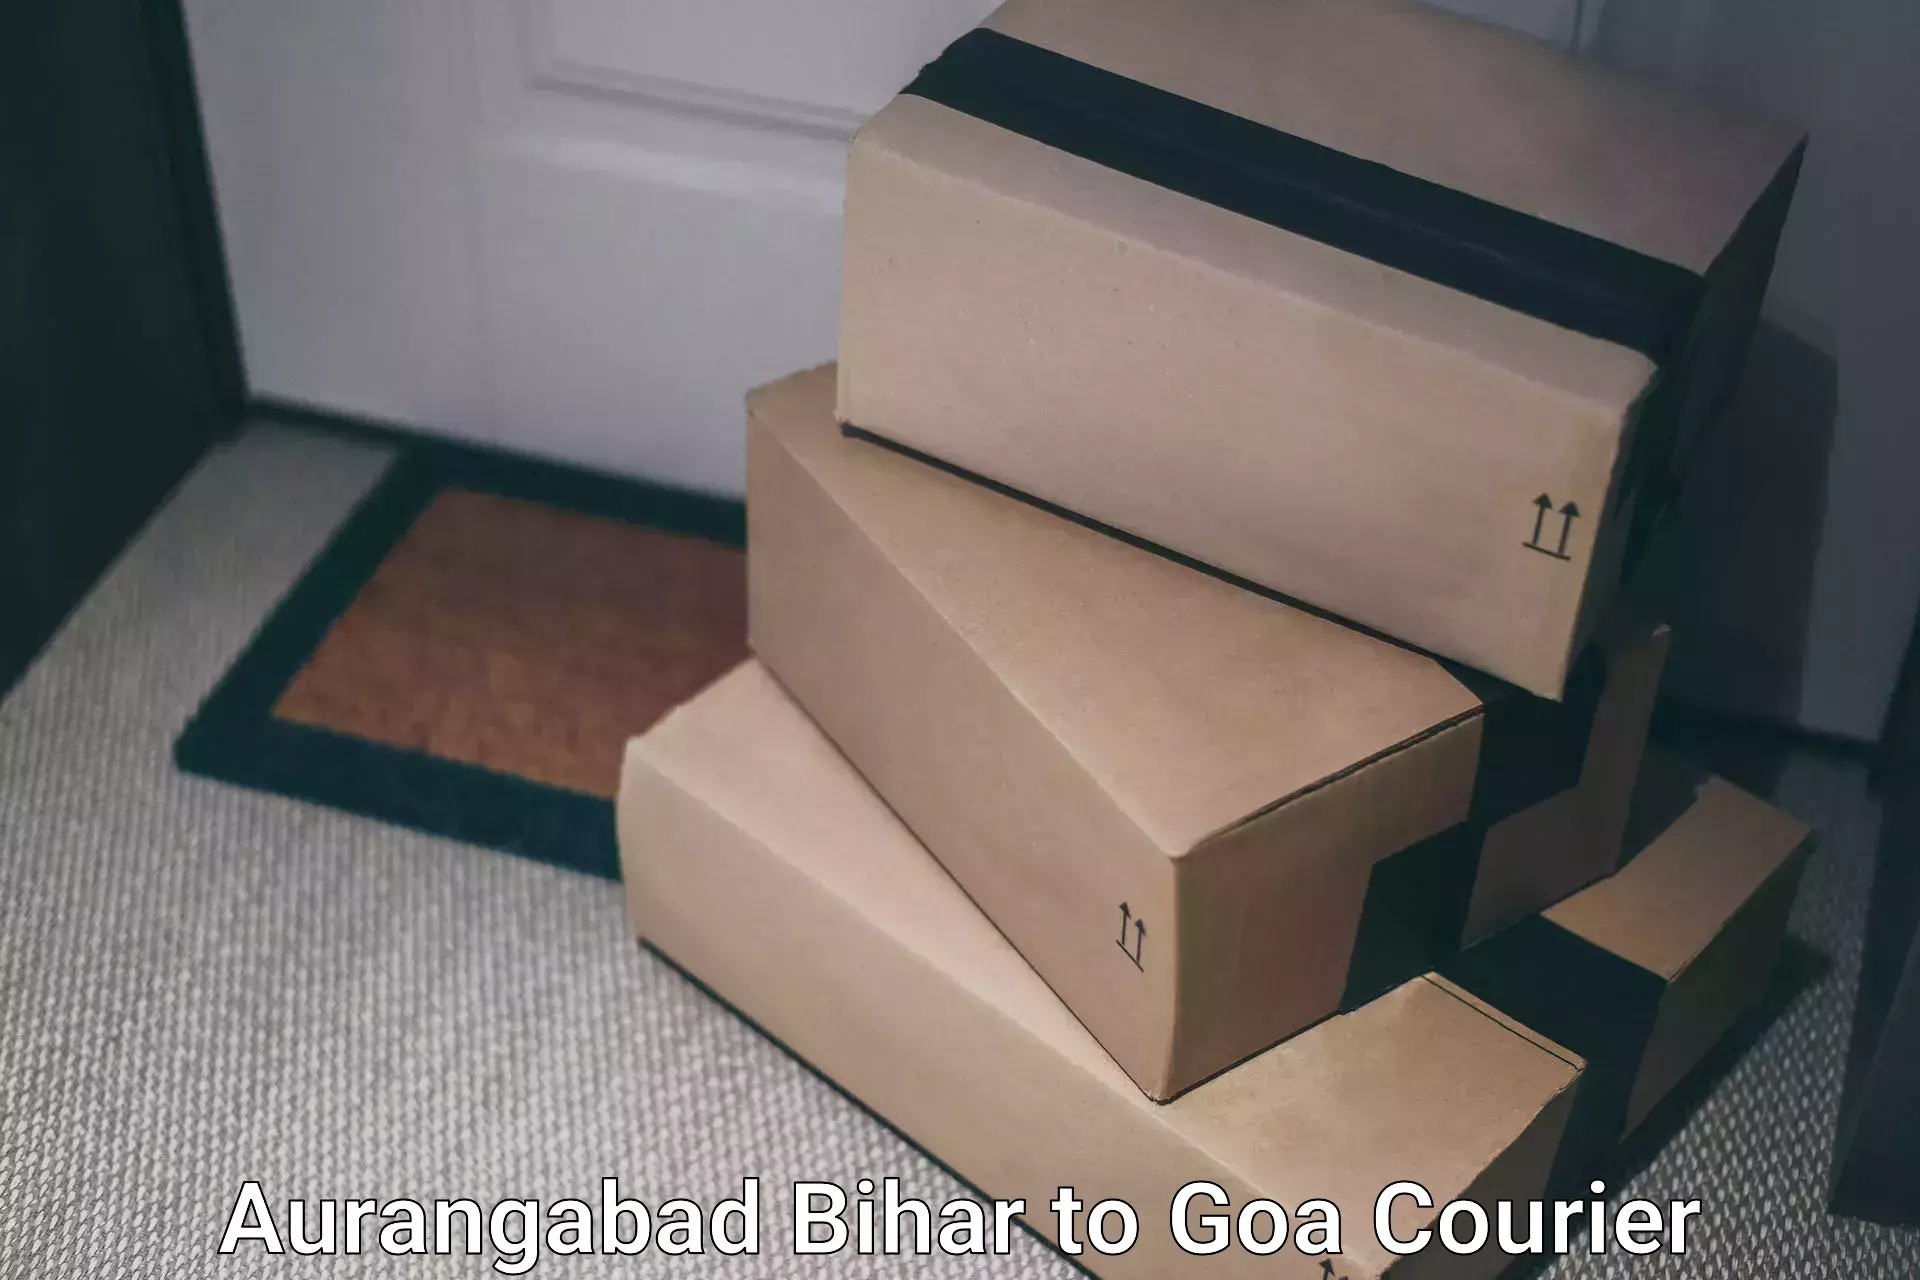 Doorstep delivery service Aurangabad Bihar to Bicholim